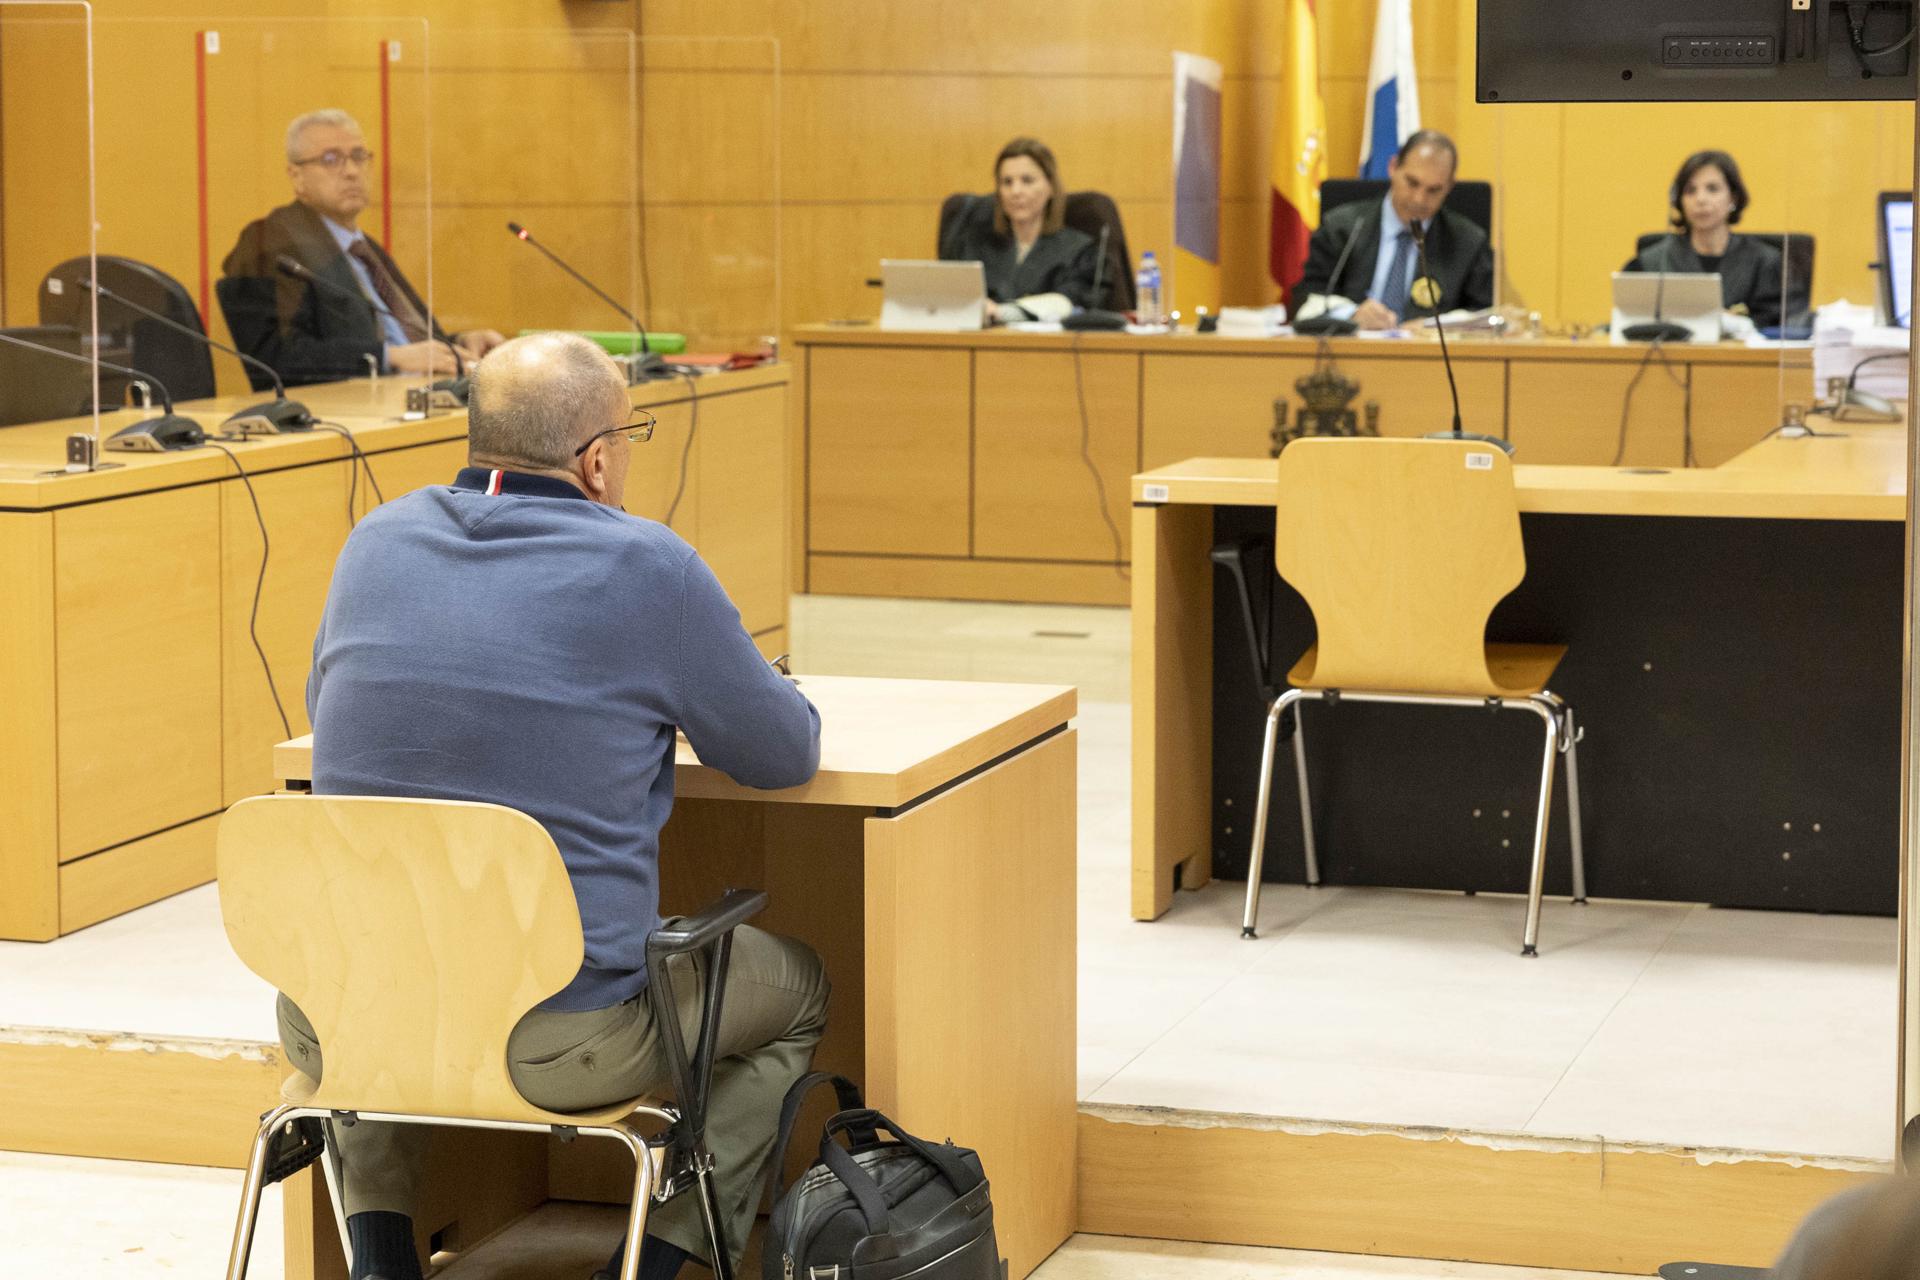 Foto de archivo del juicio celebrado en la Audiencia de Santa Cruz de Tenerife contra el exgerente de la Fundación Canaria para el Fomento del Trabajo (Funcatra) Agustín Herrera. EFE/ Miguel Barreto